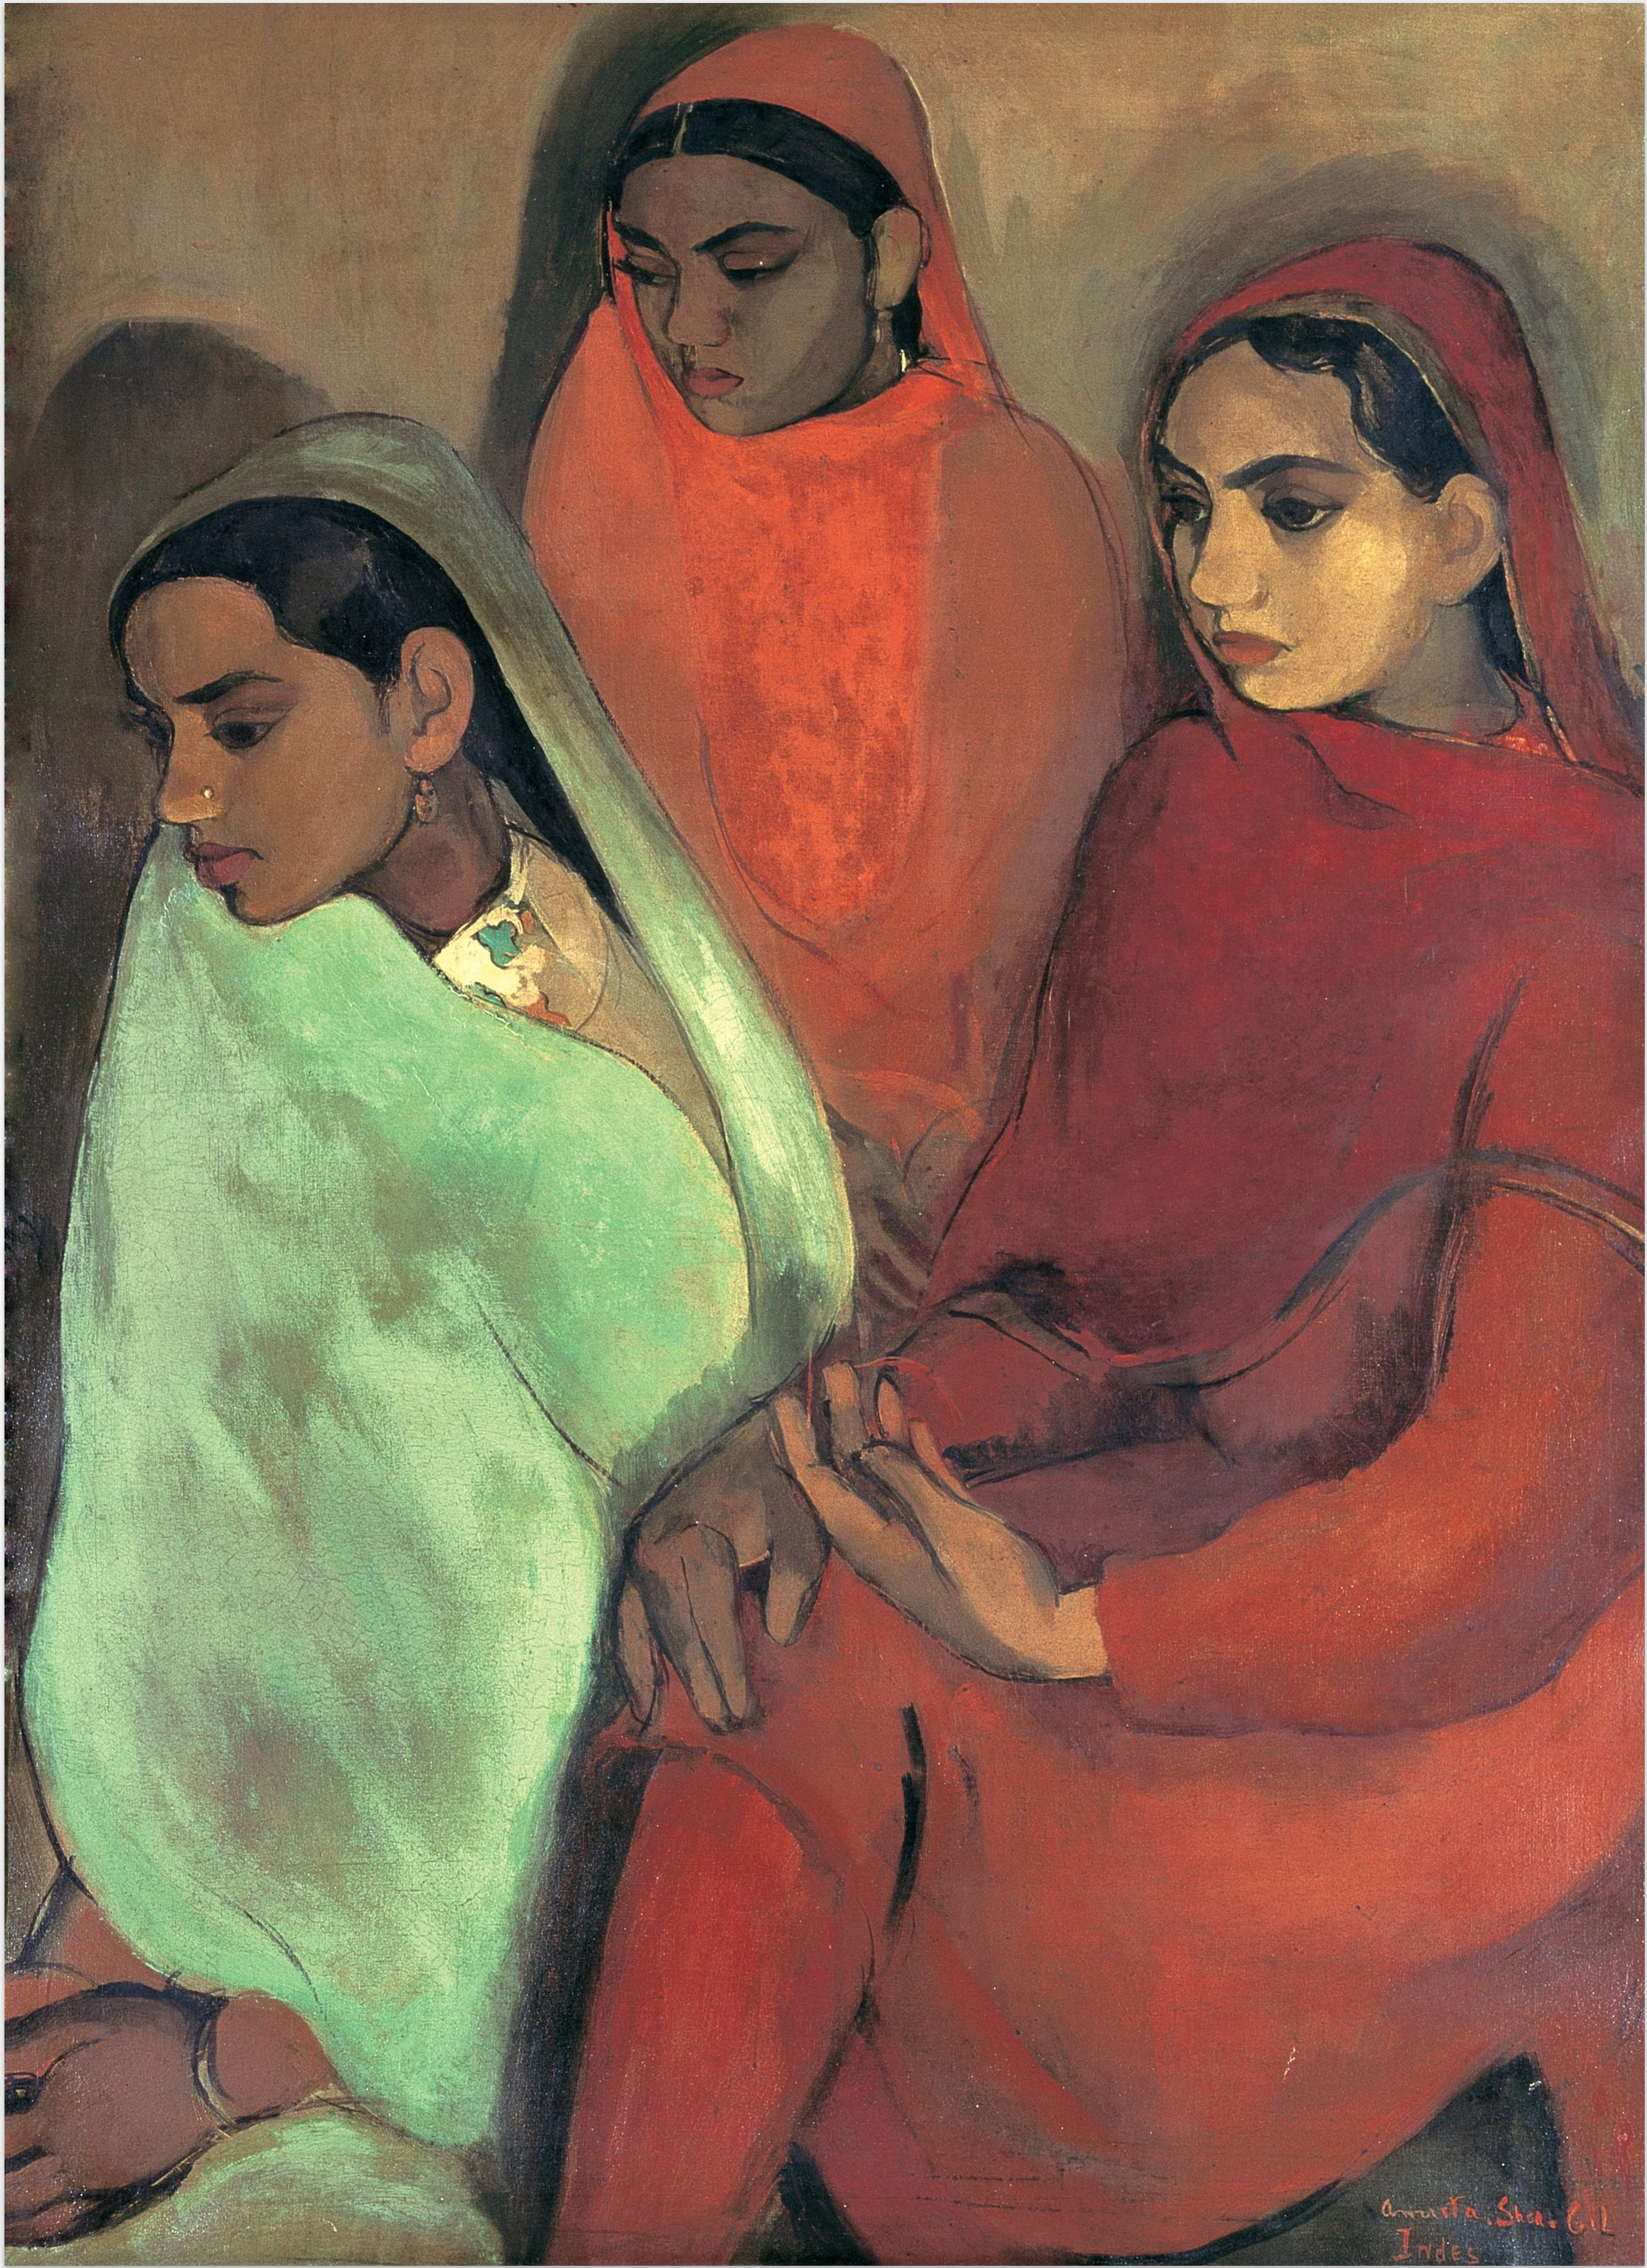 三人の少女 by Amrita Sher-Gil - 1935年 - 92.8 cm × 66.5 cm 